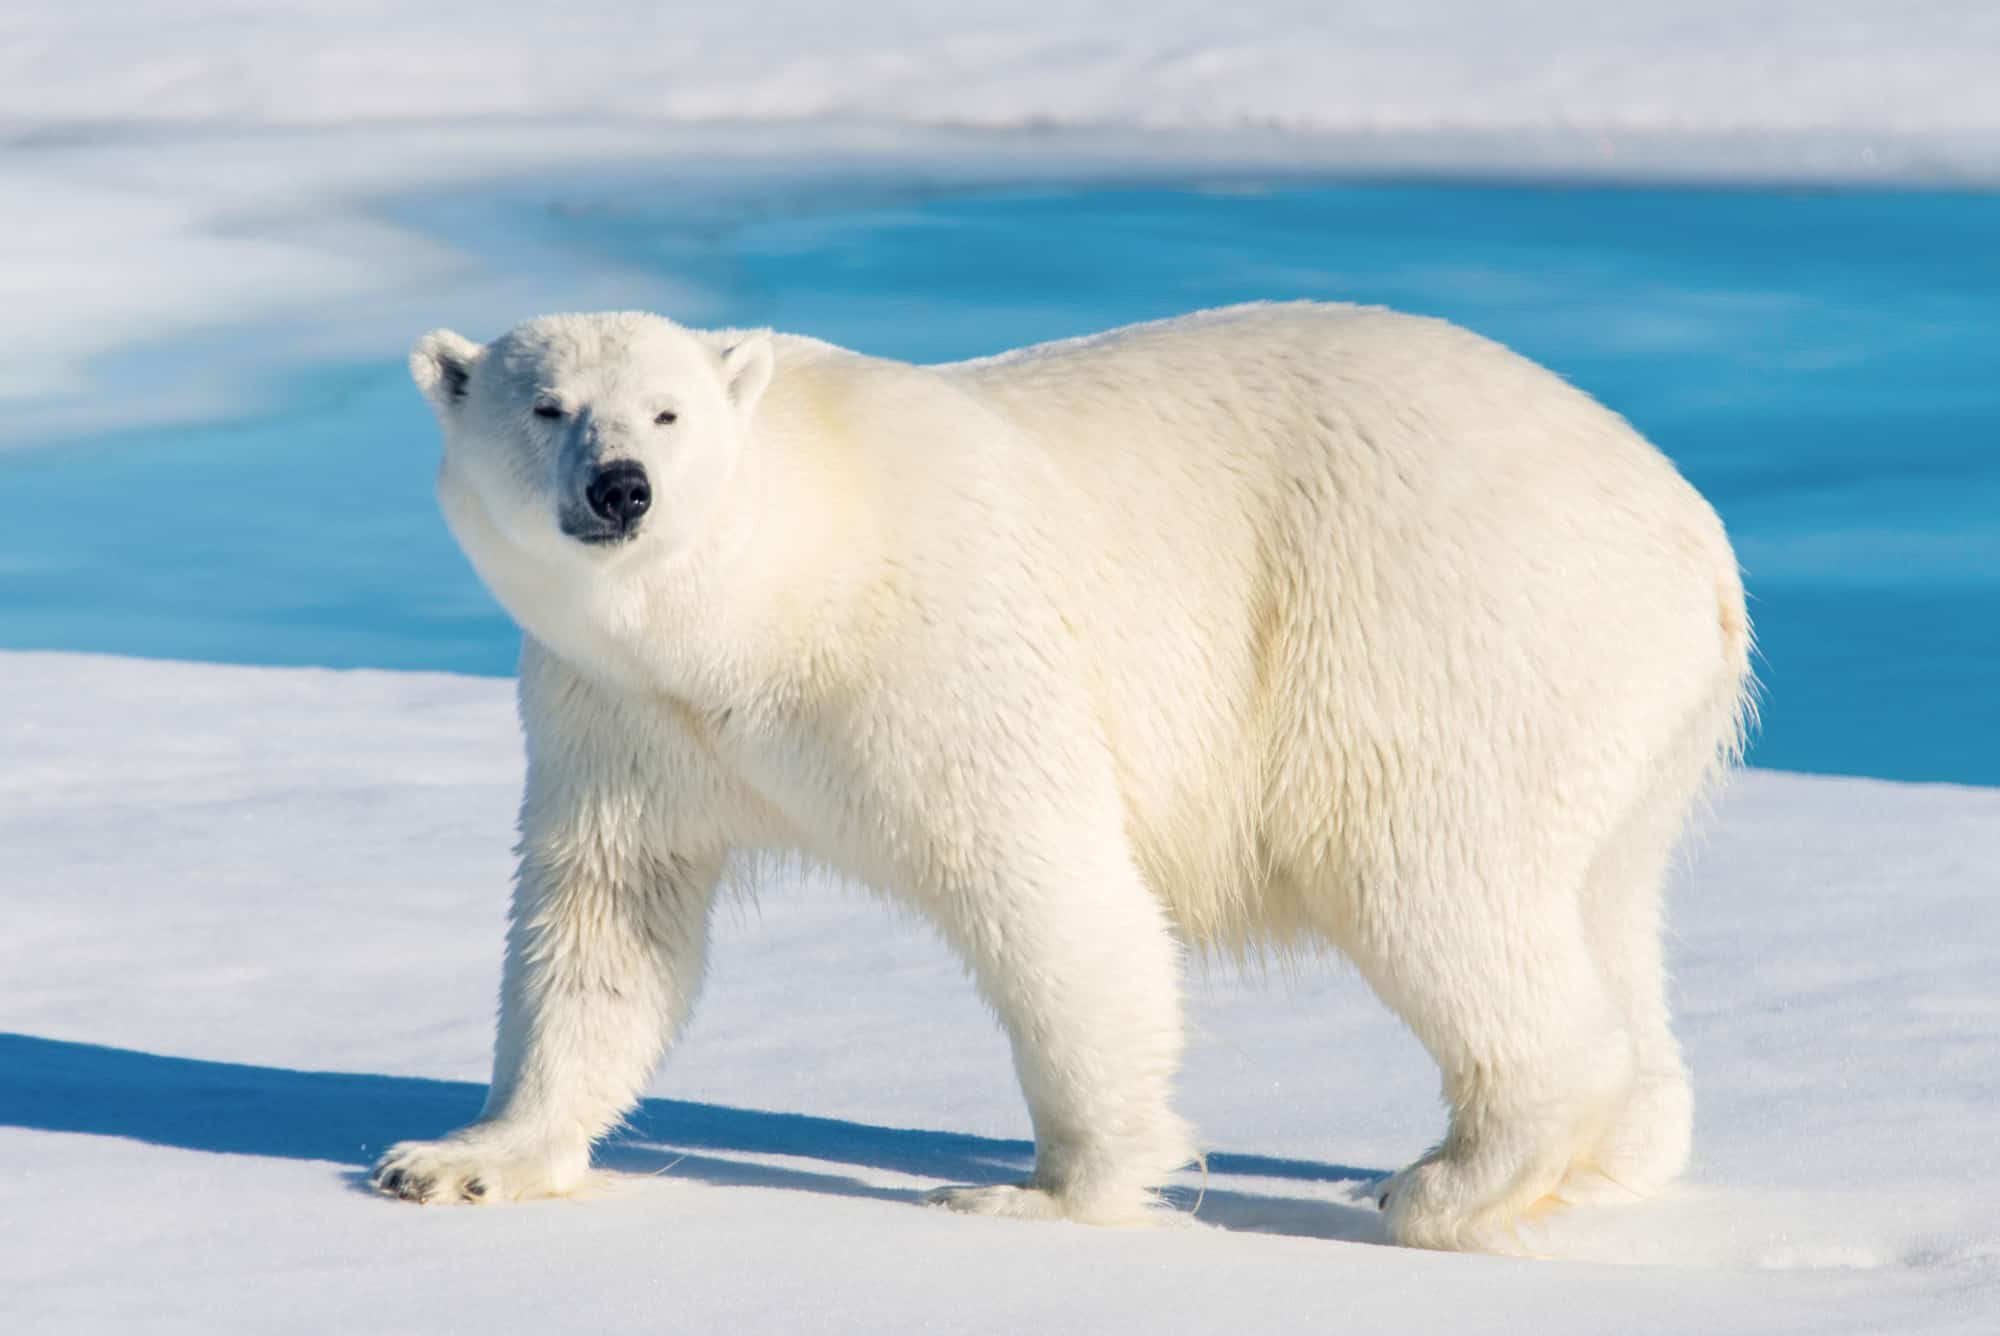 Un orso polare, l'orso bianco è al centro dell'inquadratura.  guardando verso la telecamera.  La testa dell'orso è nell'inquadratura a sinistra, è in piedi sul ghiaccio/neve, sullo sfondo è visibile l'acqua blu della piscina.